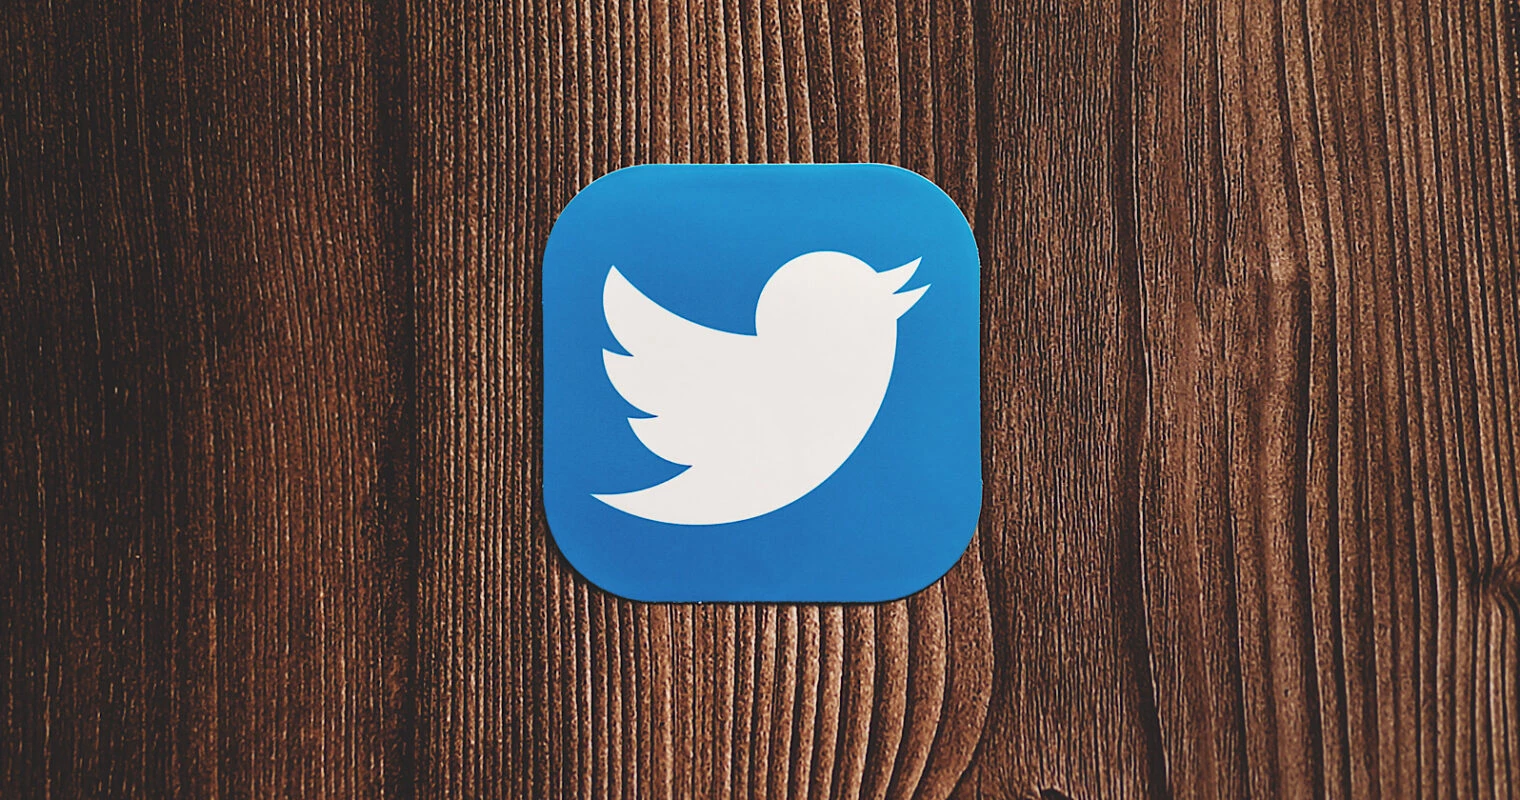 brand logo of Twitter -Marketing strategy of Twitter | IIDE